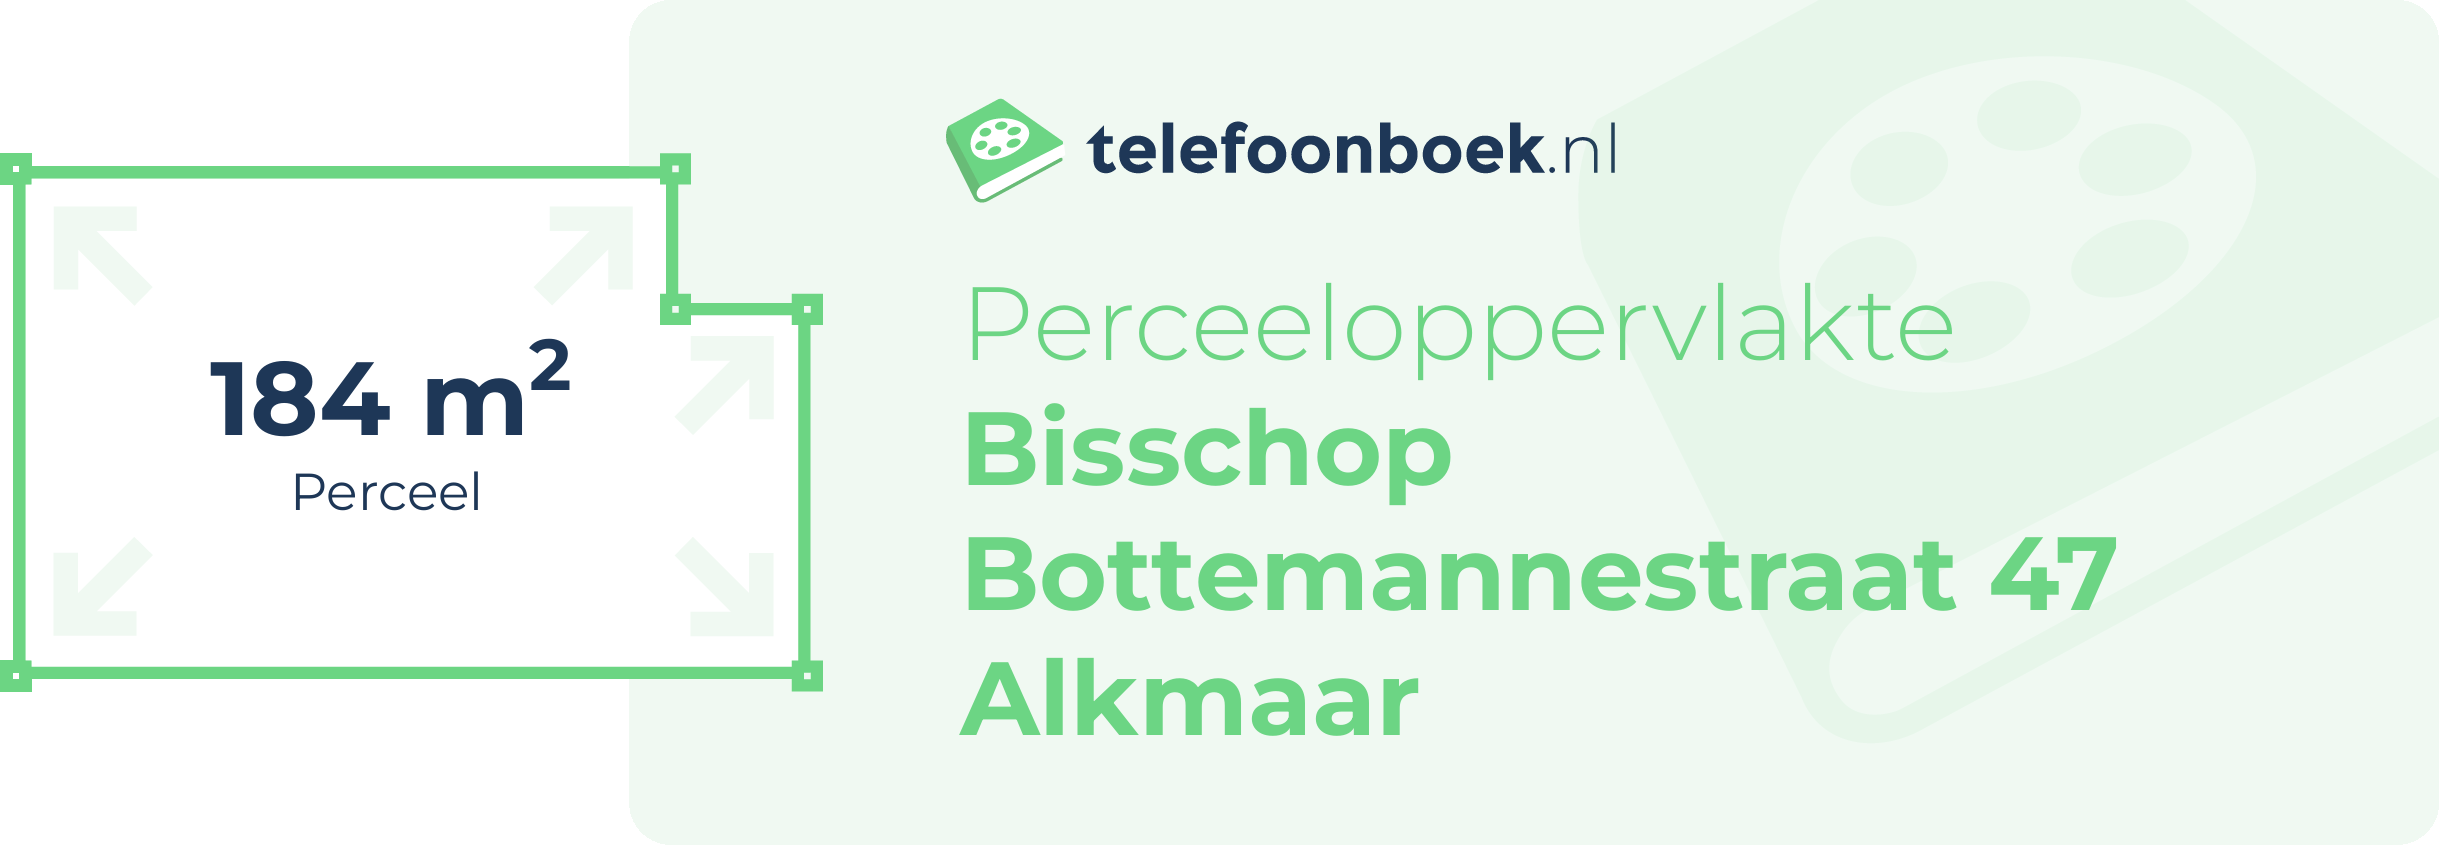 Perceeloppervlakte Bisschop Bottemannestraat 47 Alkmaar